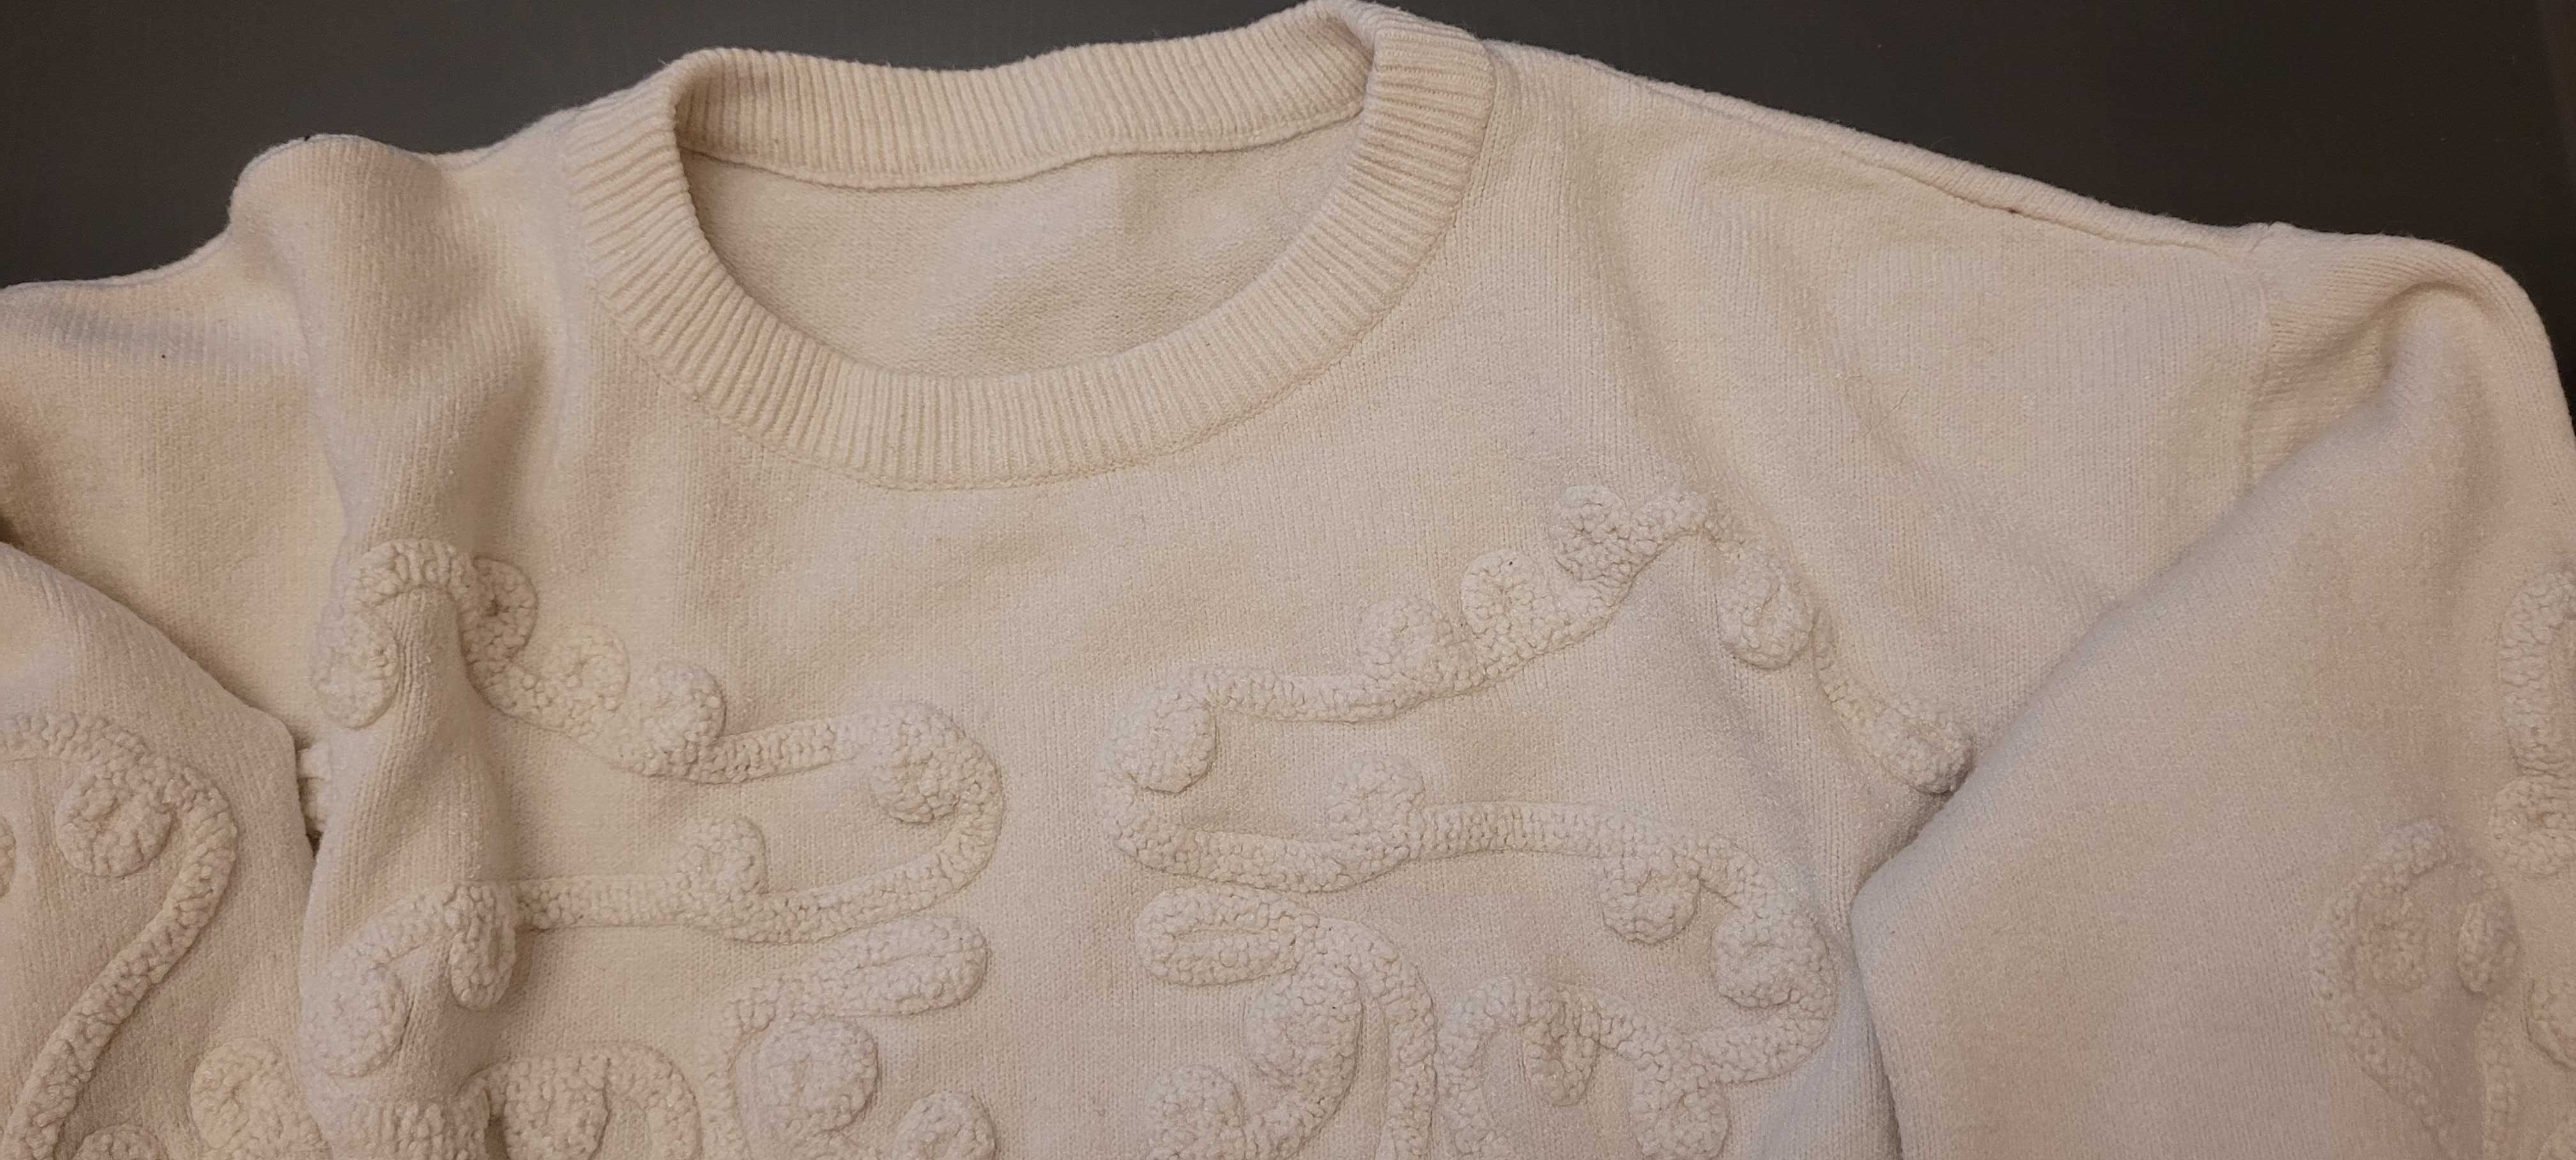 Sweterek sweter śliczny wzór wypukły rozmiar uni